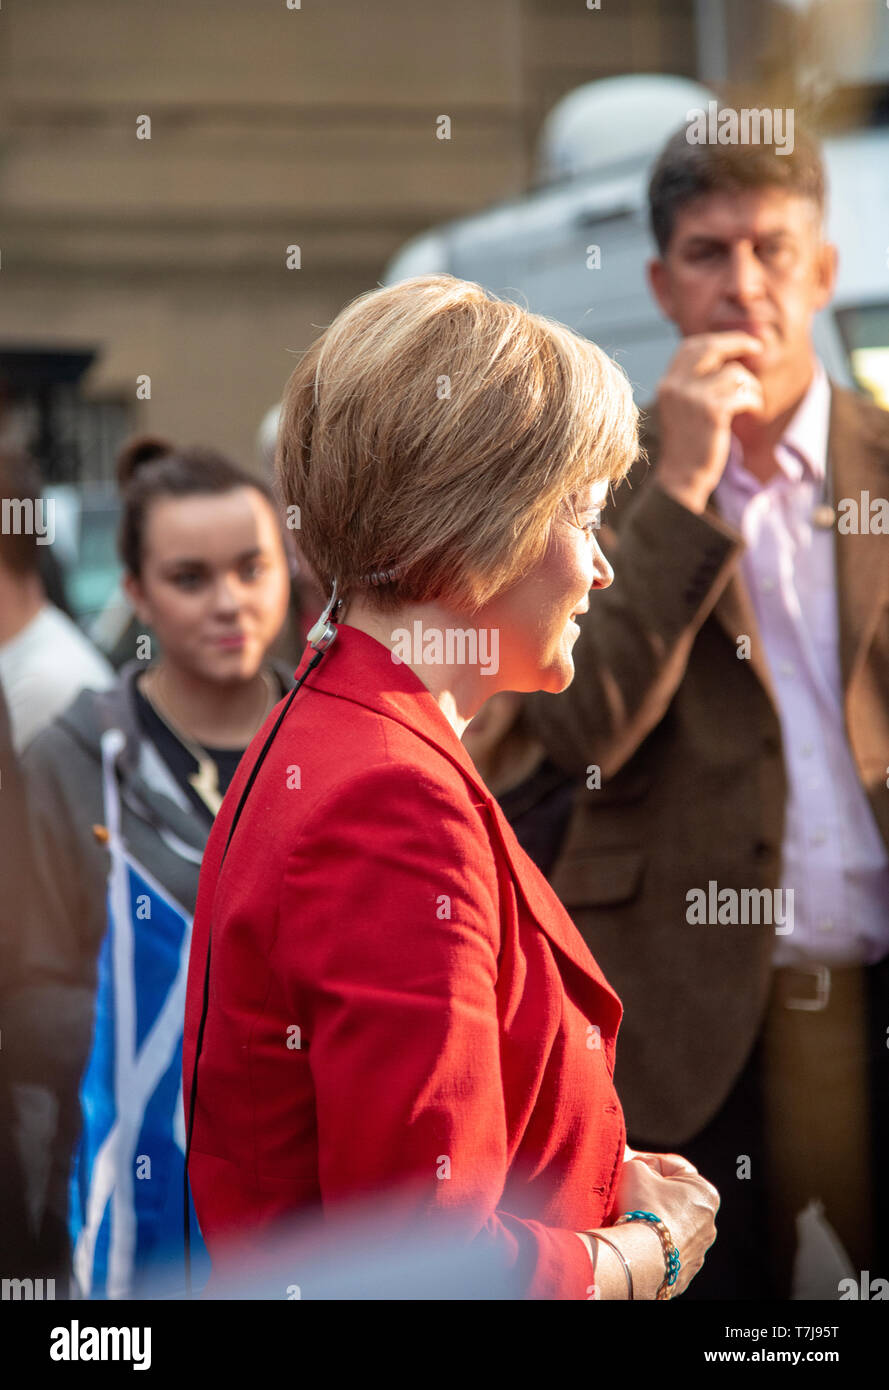 Nicola Sturgeon interviewt worden, die schottische Unabhängigkeit Volksabstimmung 2014, Perth und Kinross, Schottland, Großbritannien Stockfoto